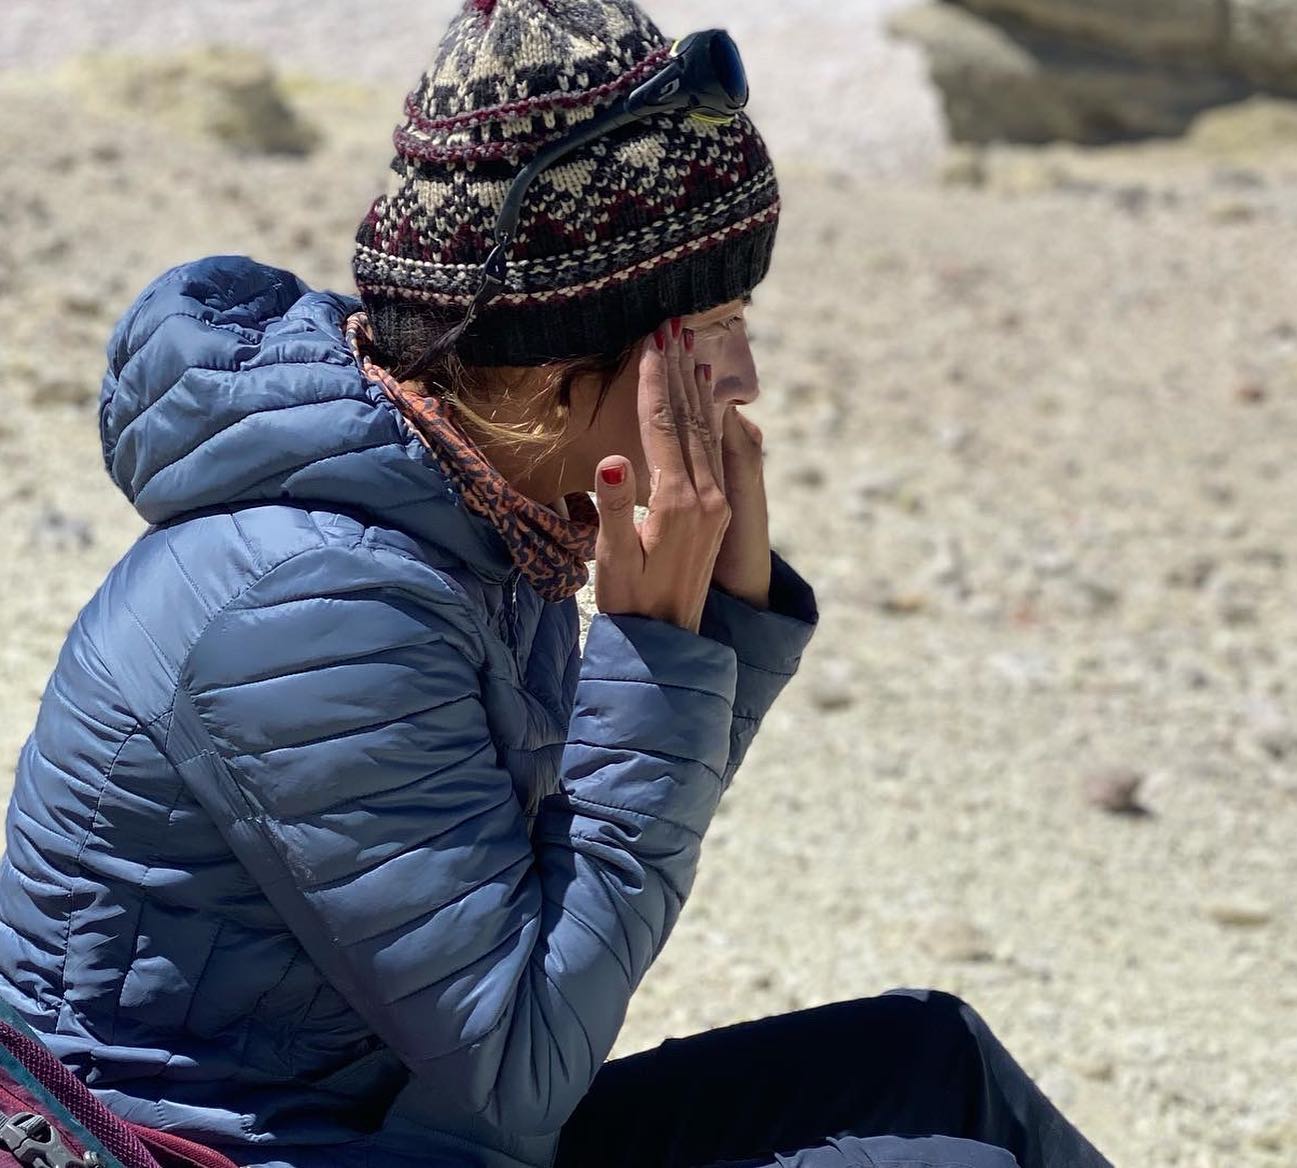 عکس متفاوت و دیده نشده سارا بهرامی در قله دماوند